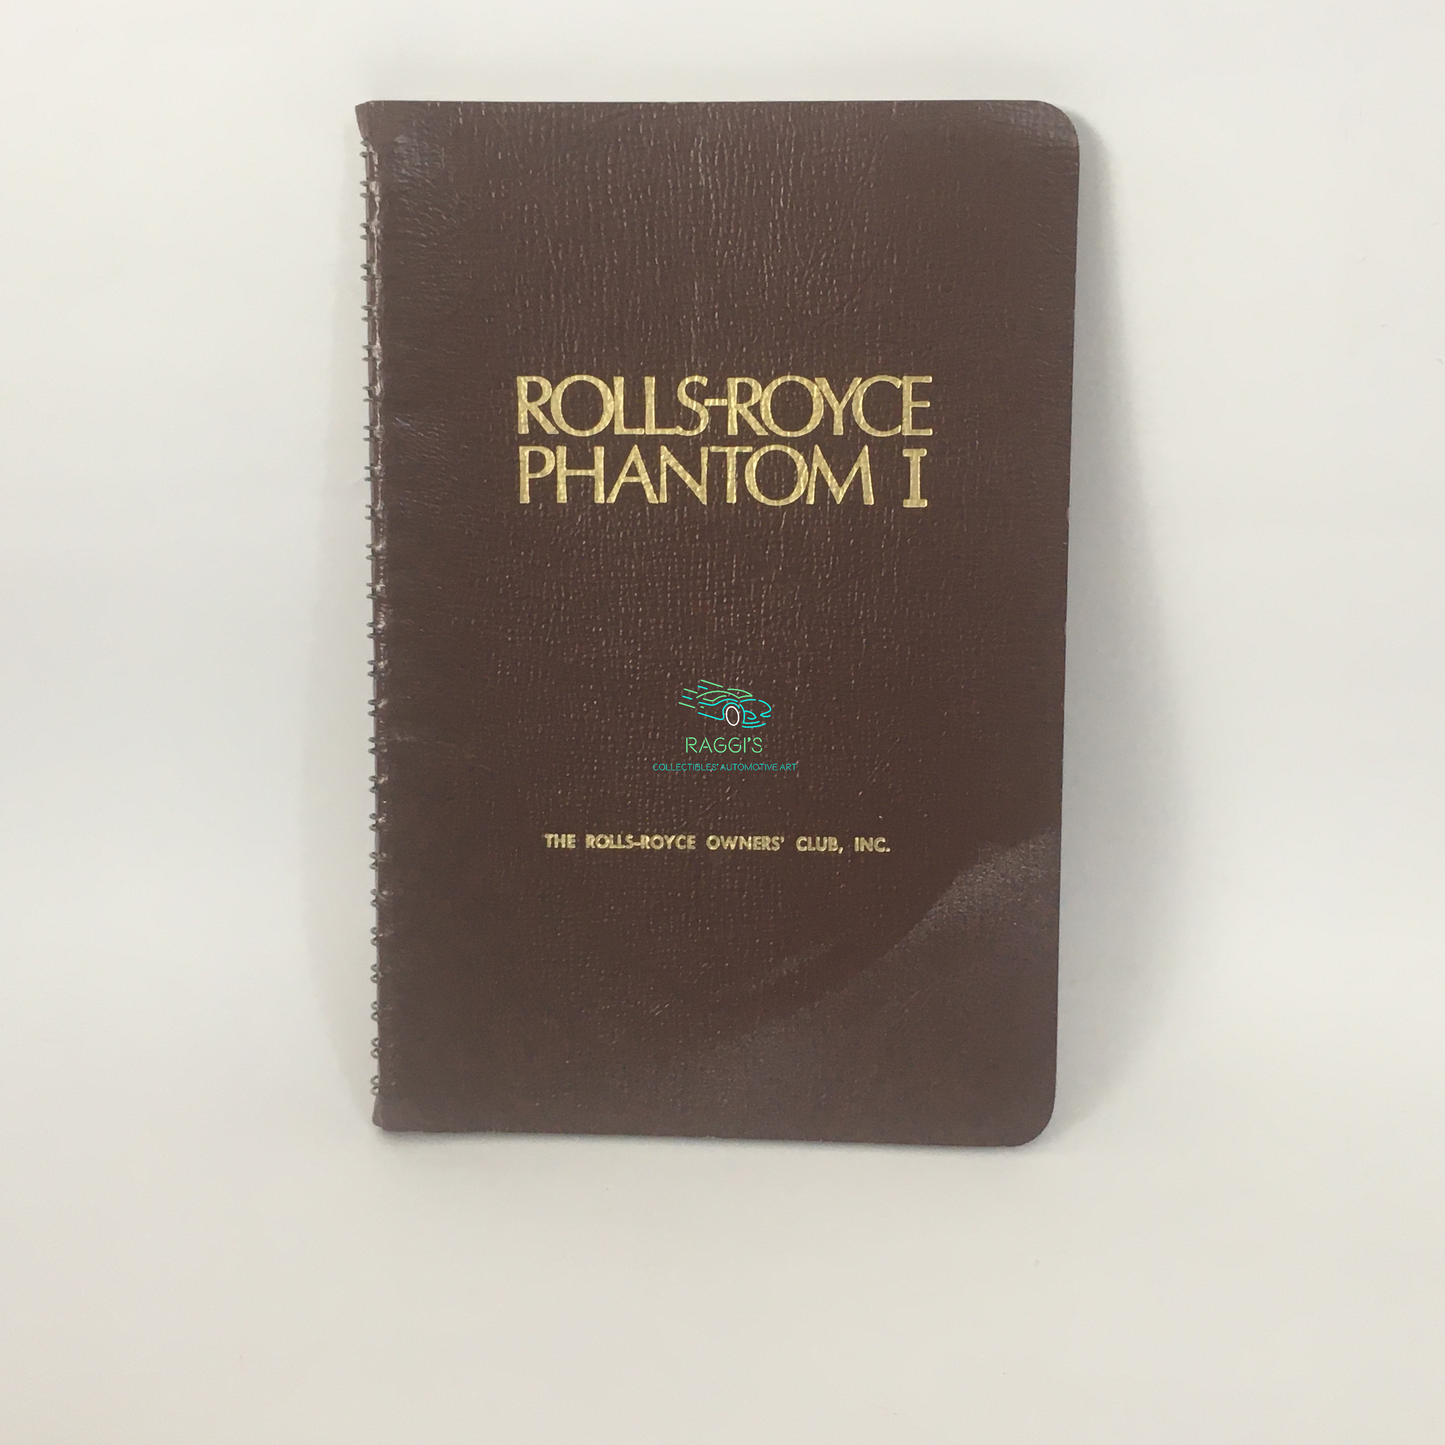 Rolls-Royce, Handbook for Rolls-Royce Phantom I 1978 edition by The Rolls-Royce Owners' Club